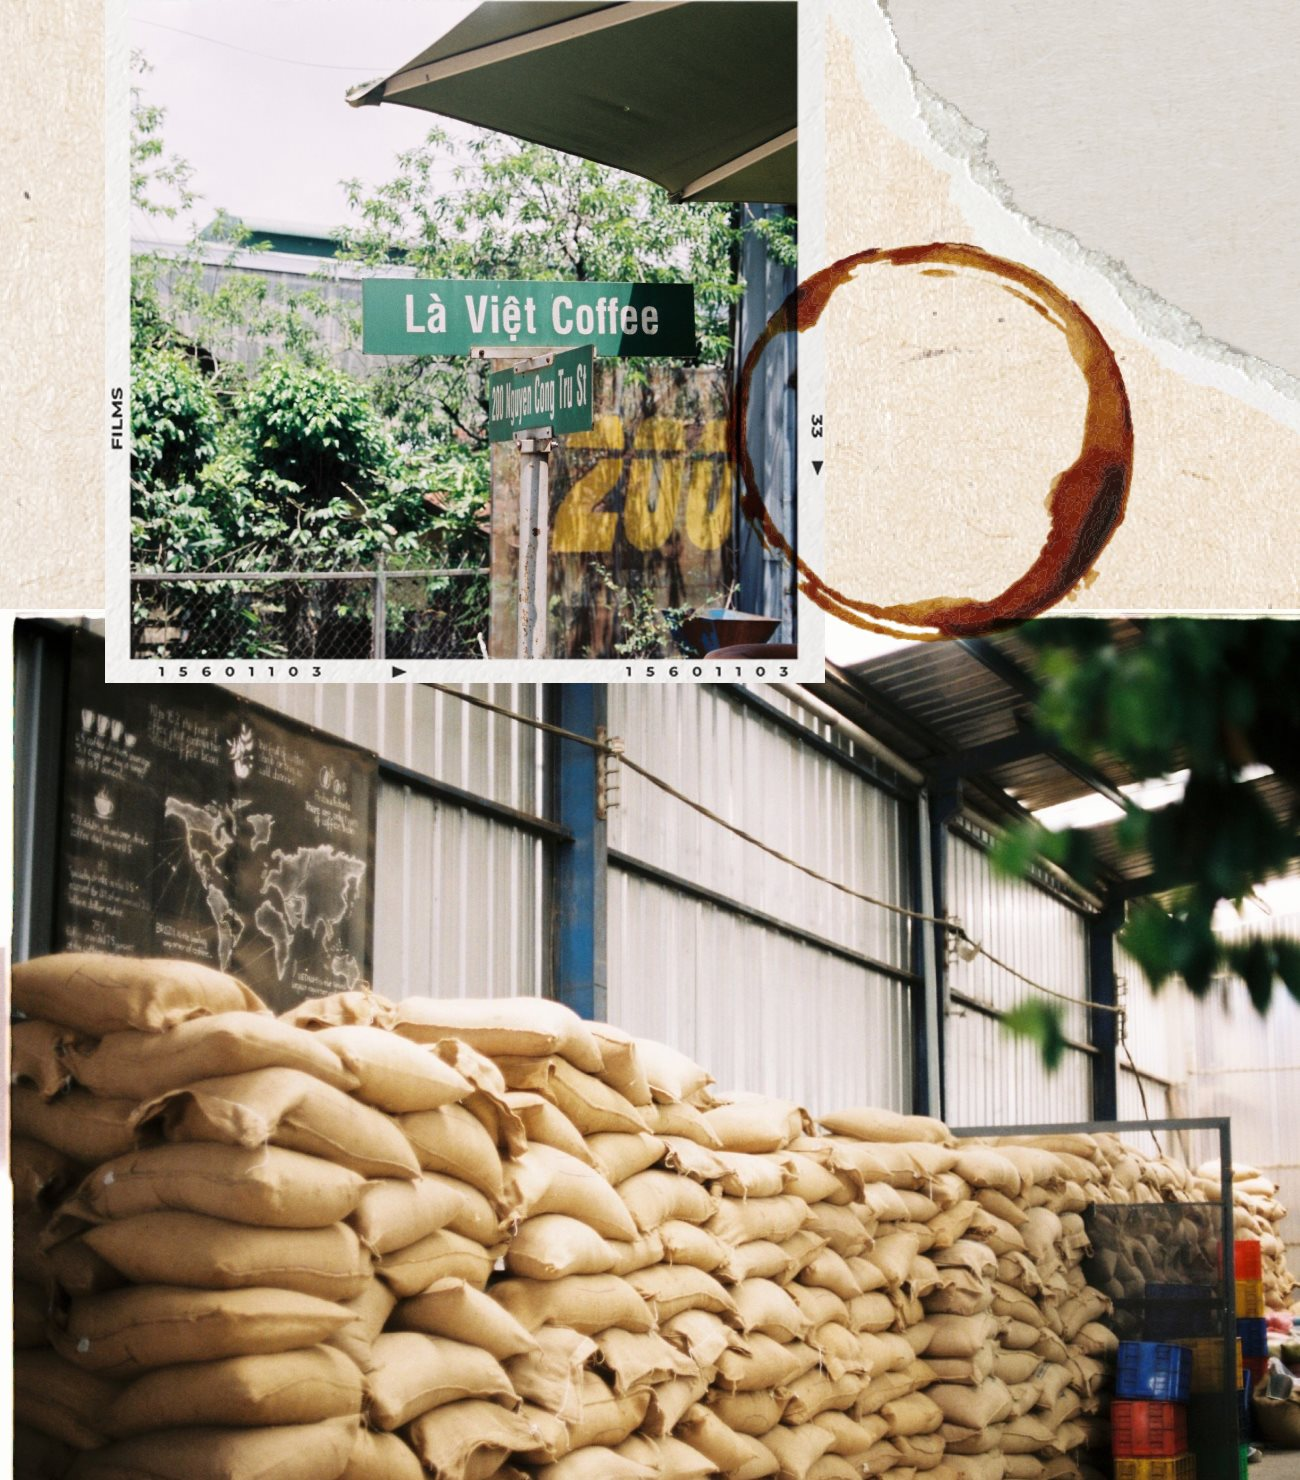 Nhà sáng lập Là Việt Coffee: 10 năm kiên trì với hạt Arabica, mở mô hình “từ nông trại đến tách” đầu tiên ở Việt Nam, bán 1 triệu ly cà phê mỗi năm - Ảnh 7.